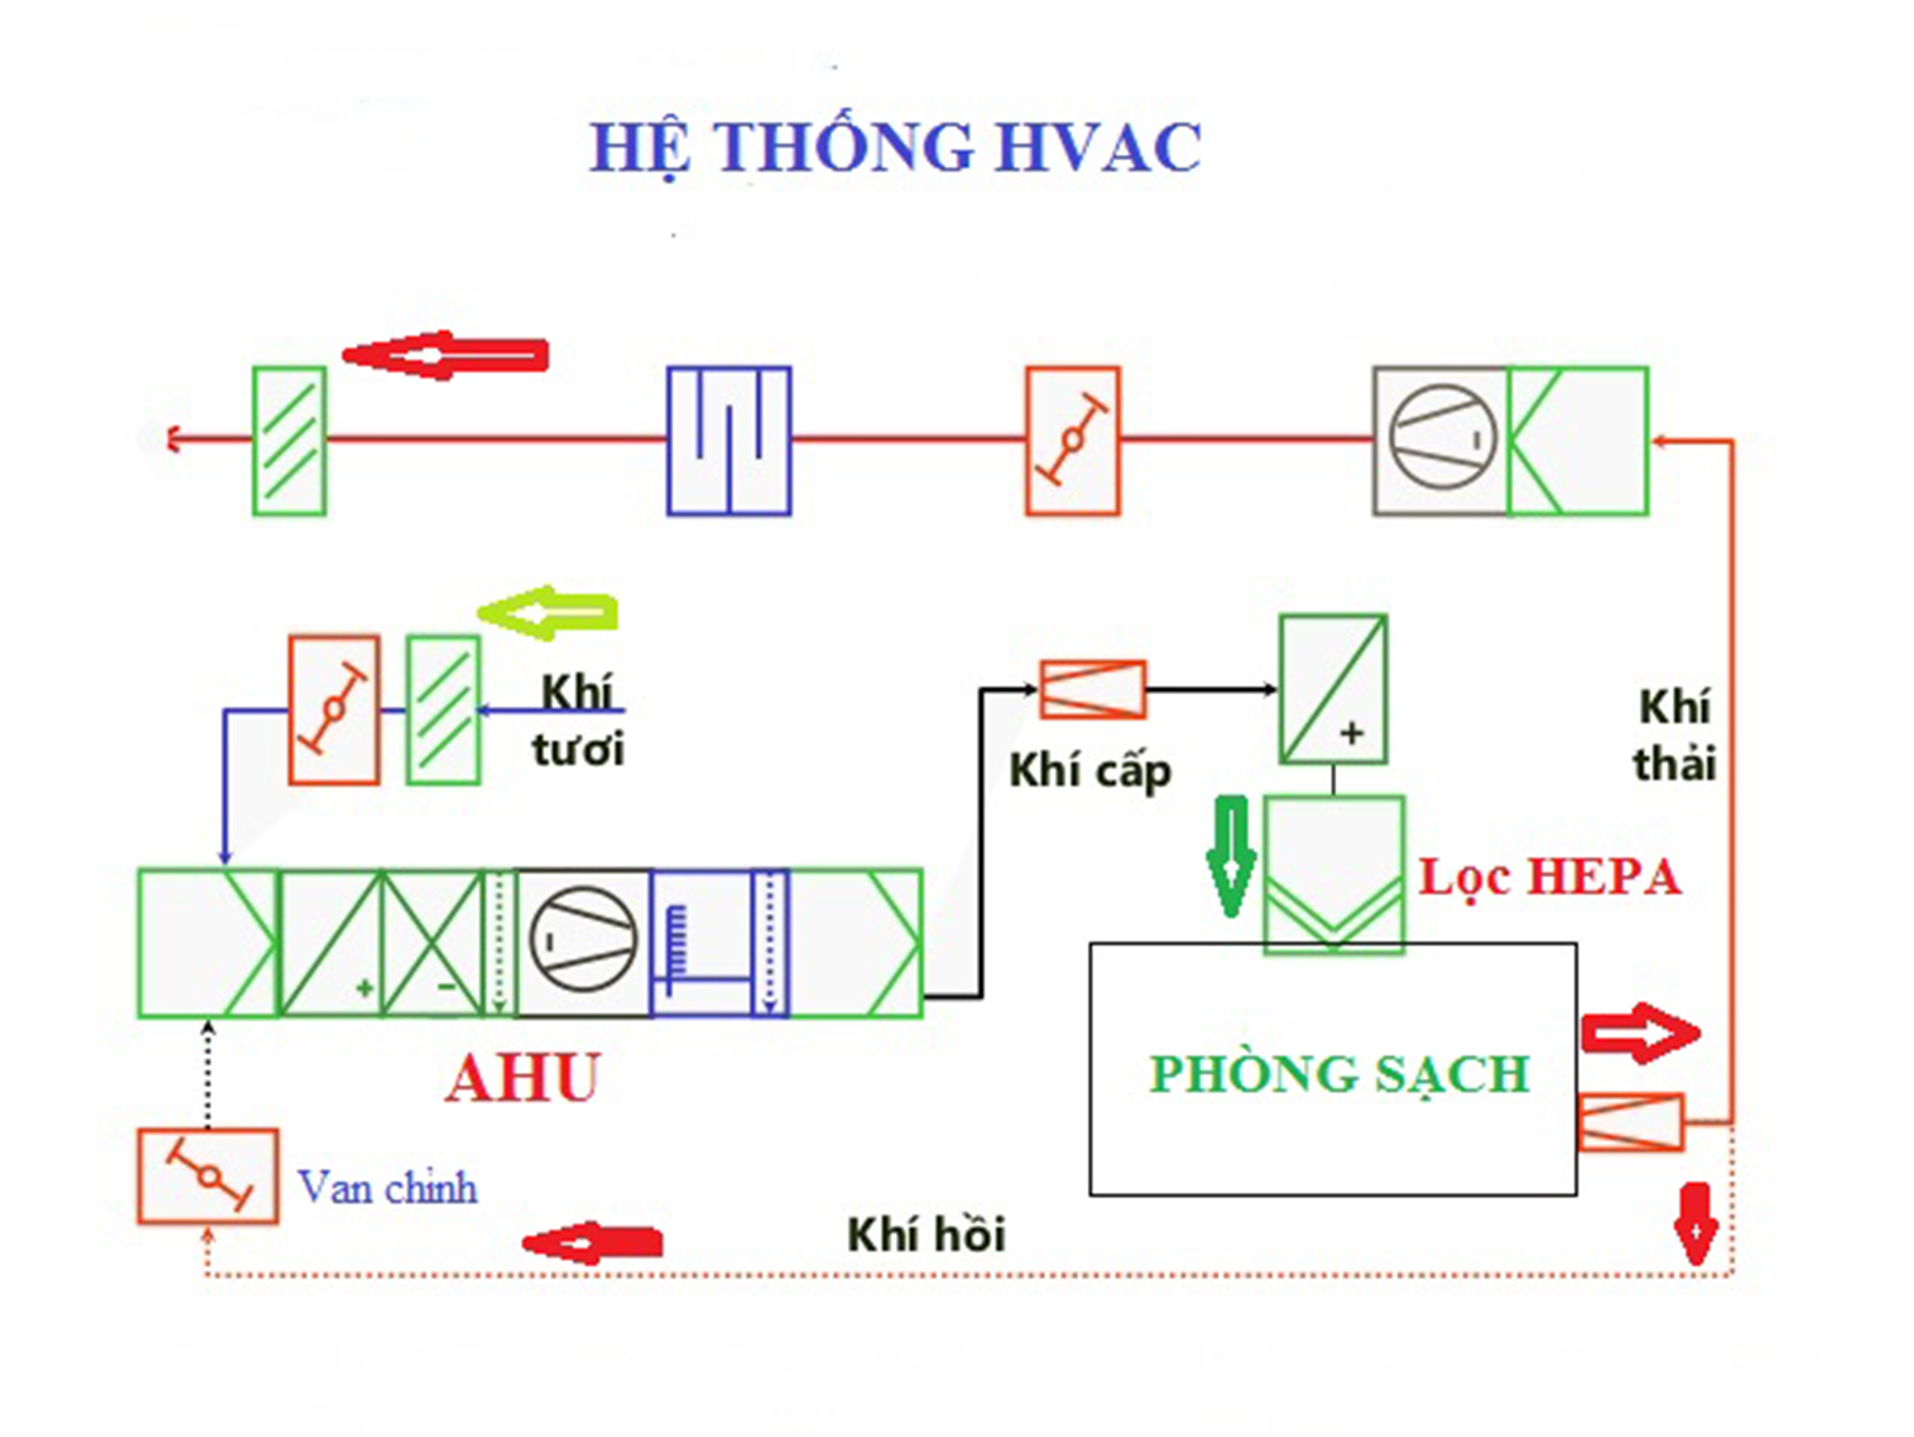 Các thành phần cơ bản trong một hệ thống HVAC